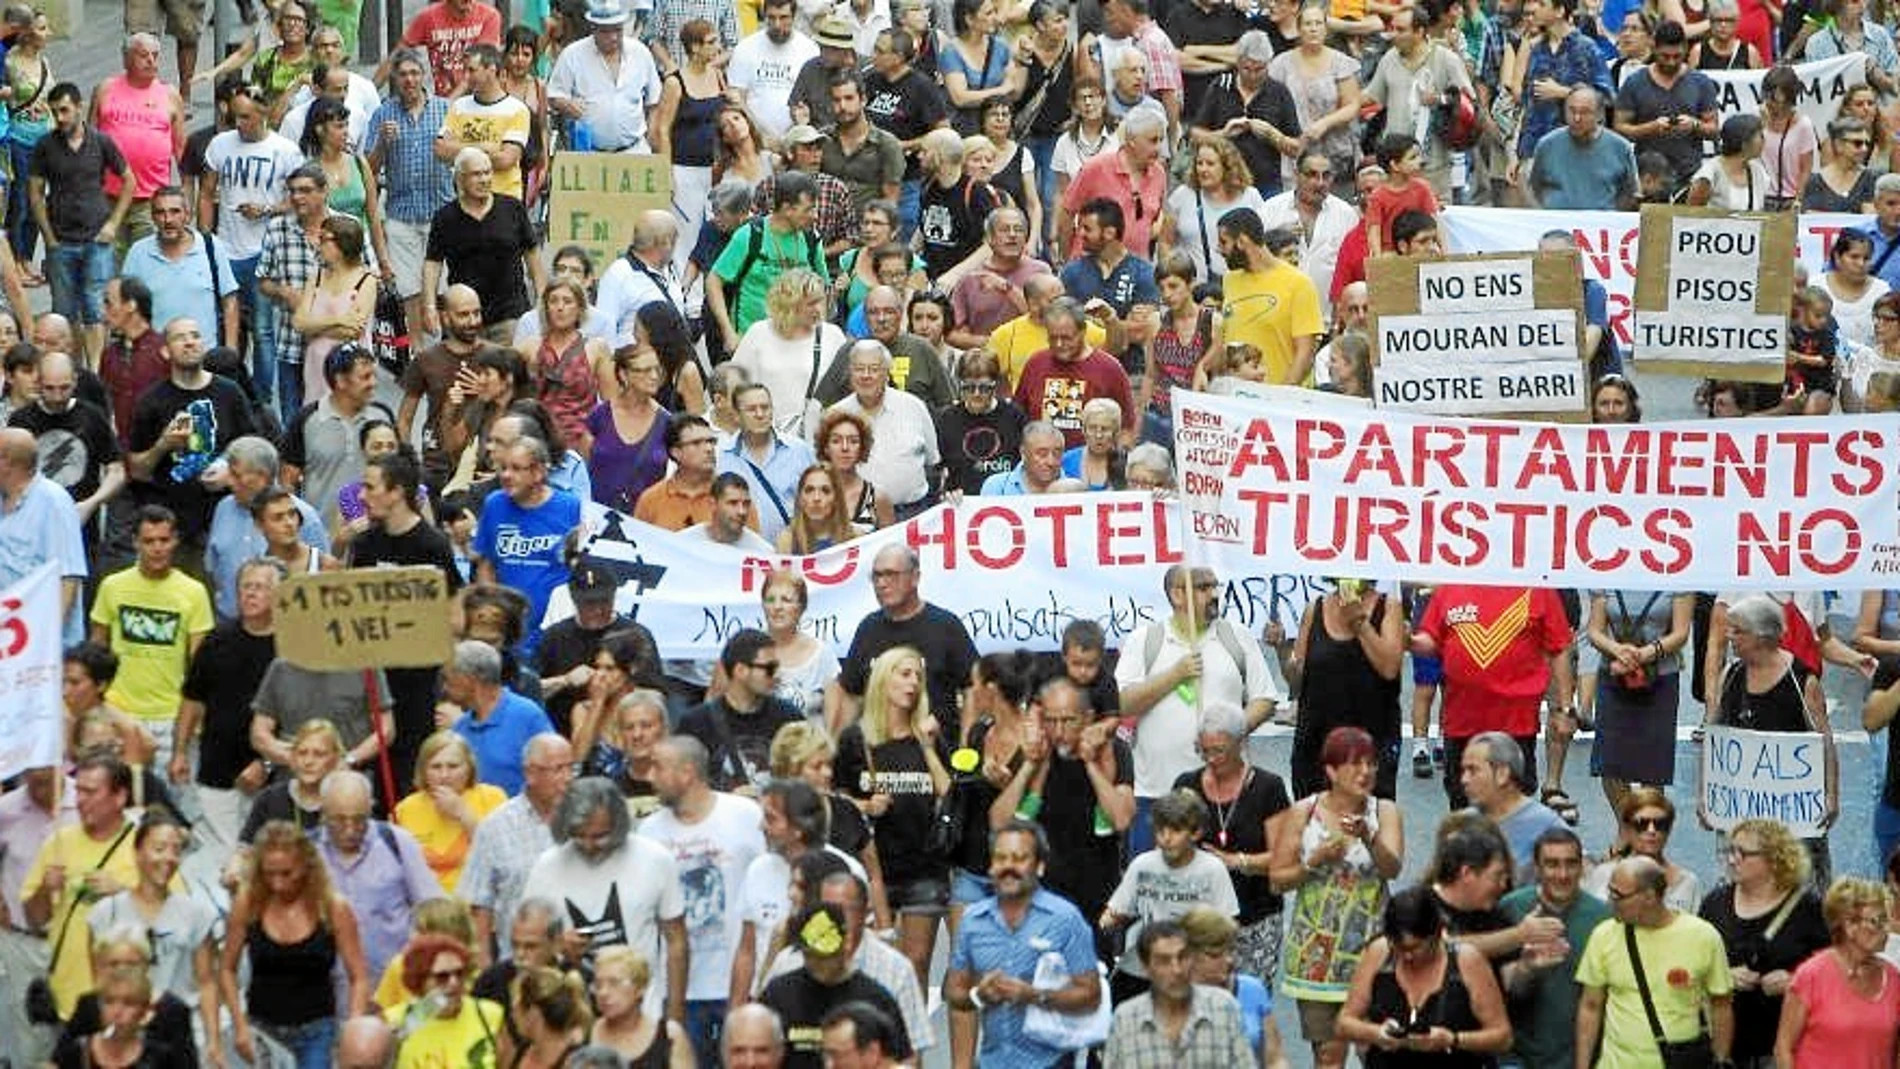 Manifestación en la Barceloneta para denunciar la proliferación de pisos turísticos ilegales